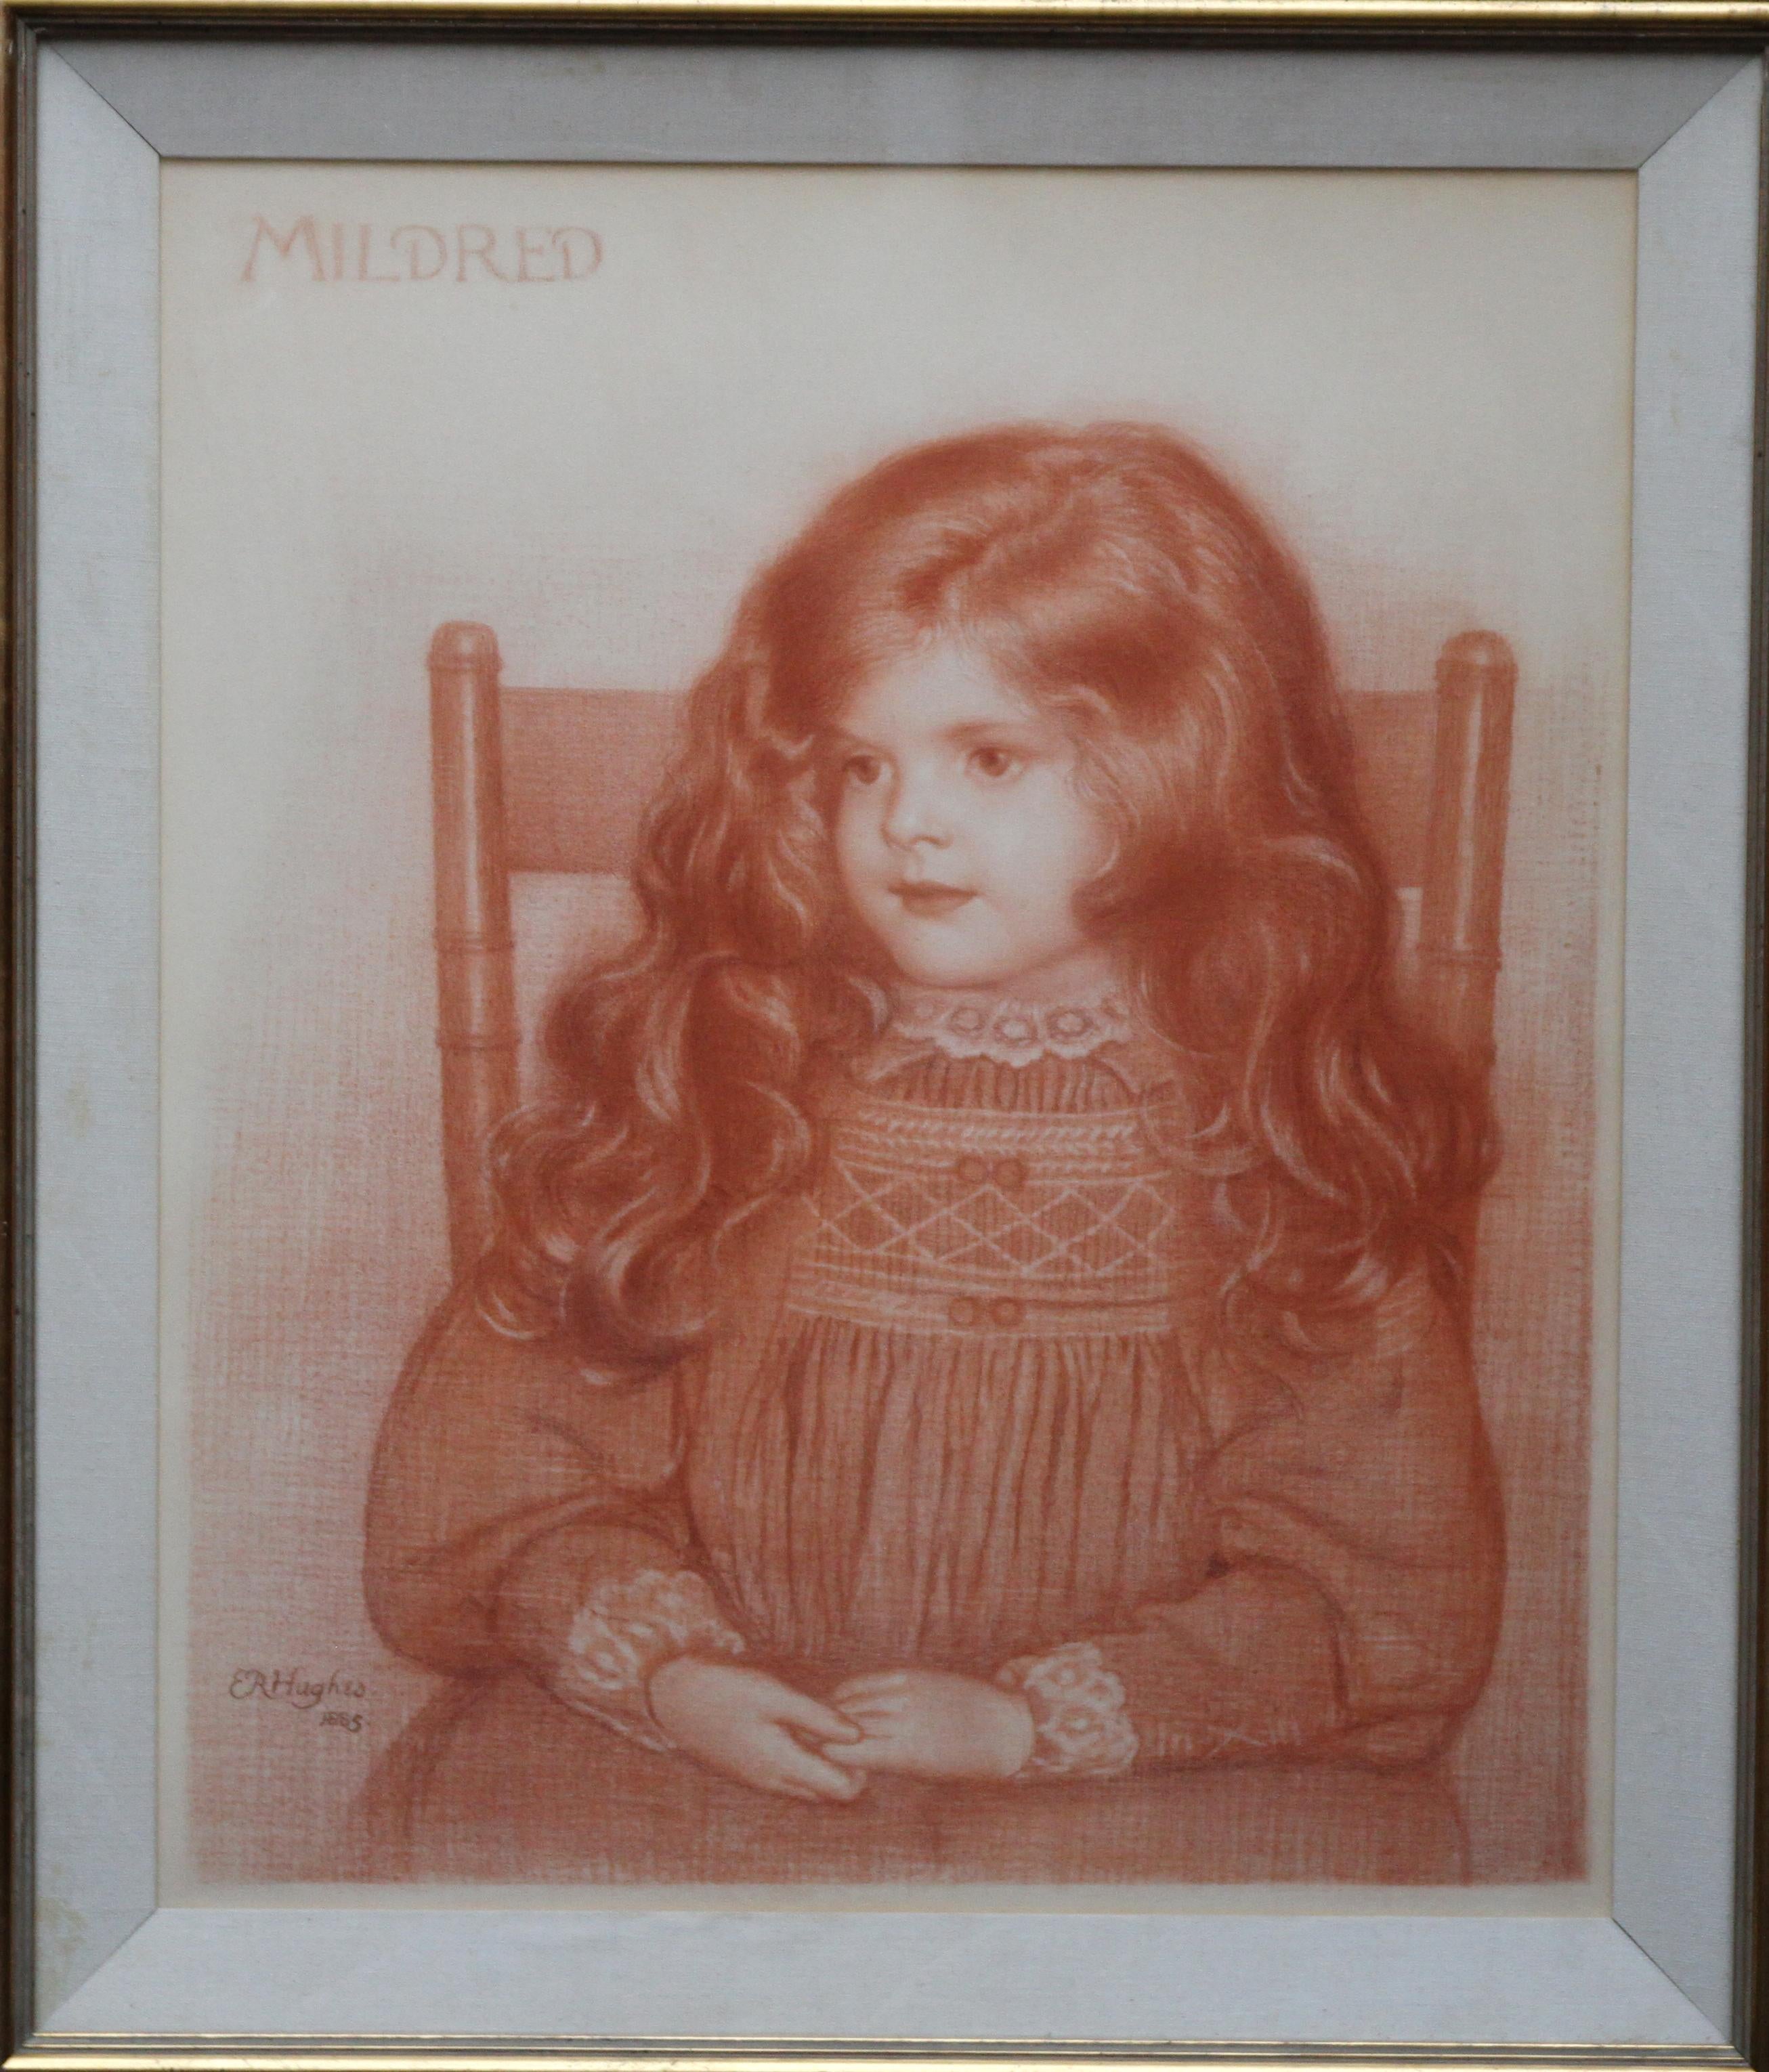 Edward Robert Hughes Portrait – Porträt von Mildred – britisches viktorianisches, präraffaelitisches, sitzendes junges Mädchen